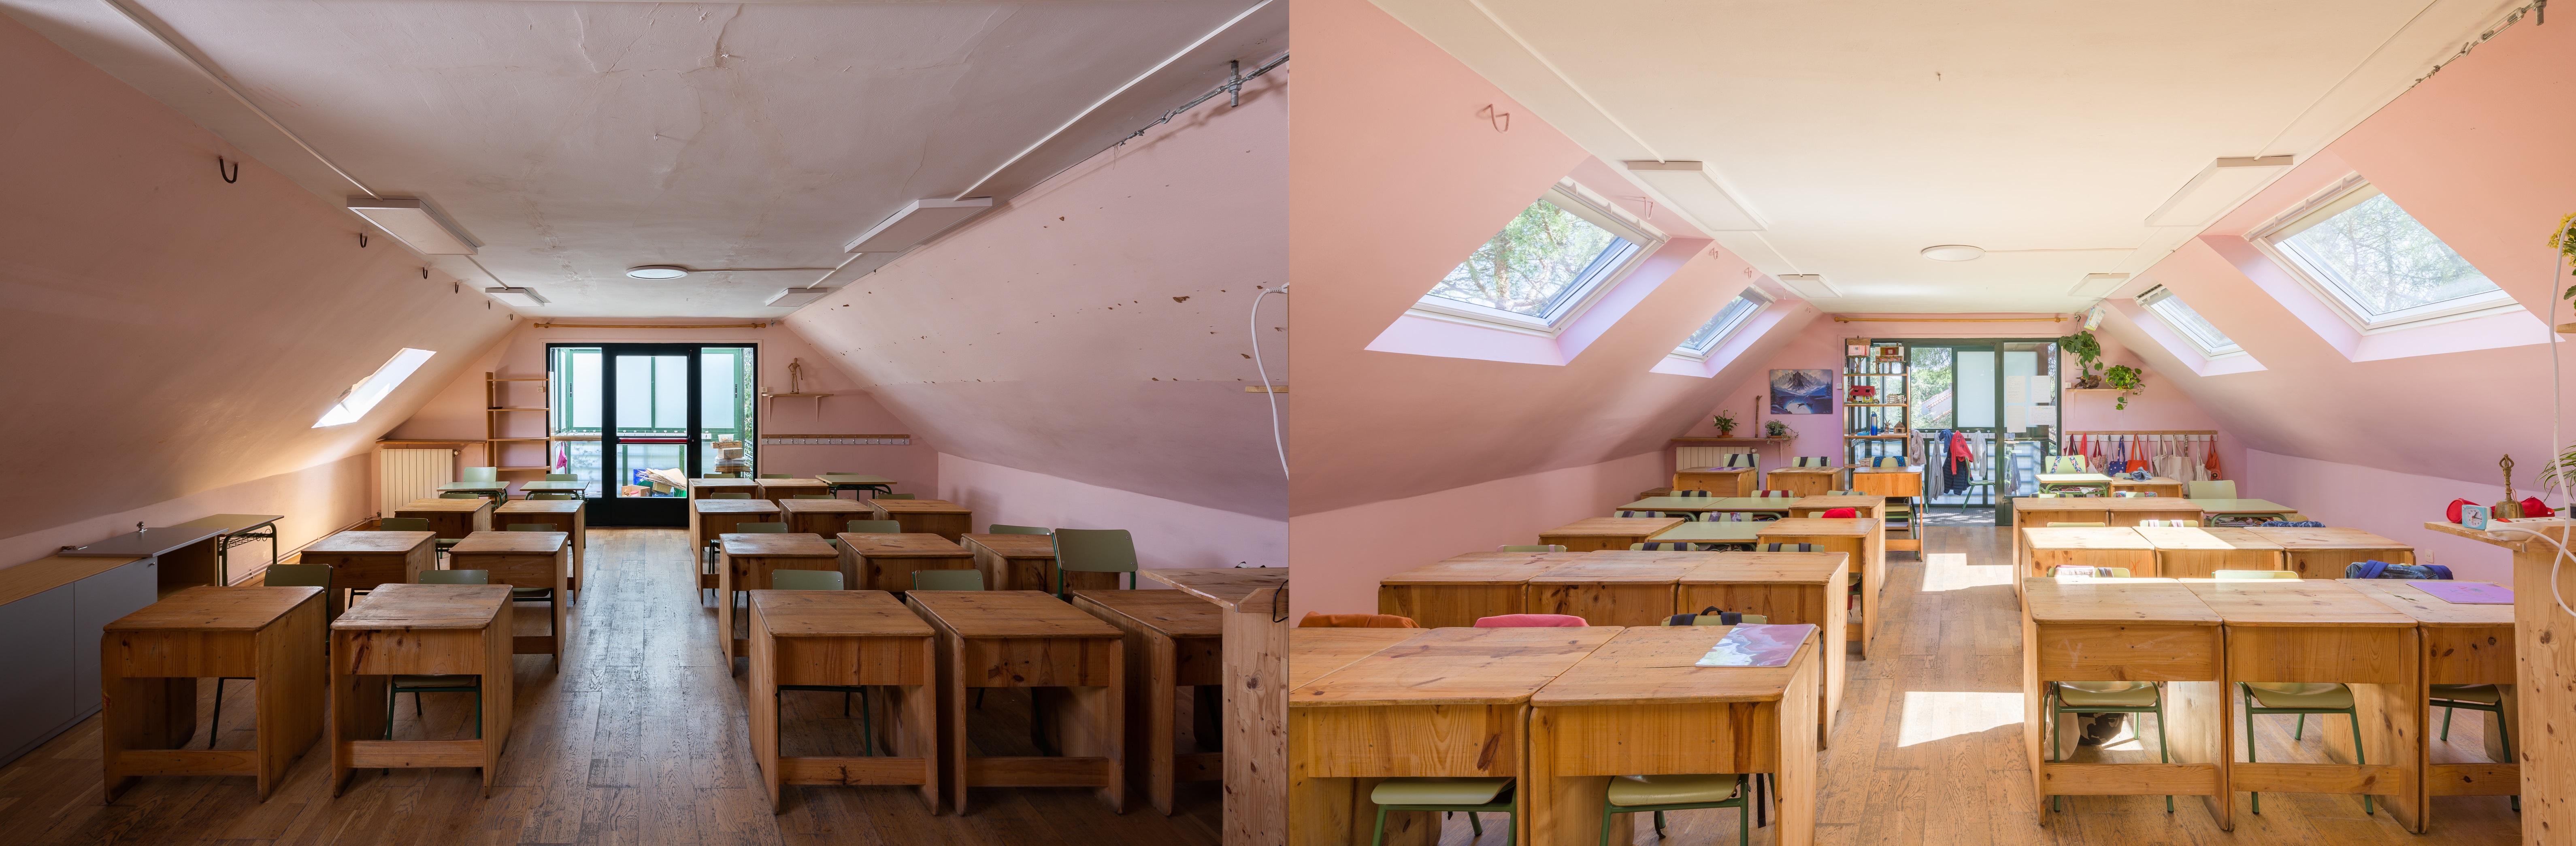 antes y después Escuela Wardolf Aravaca.jpg